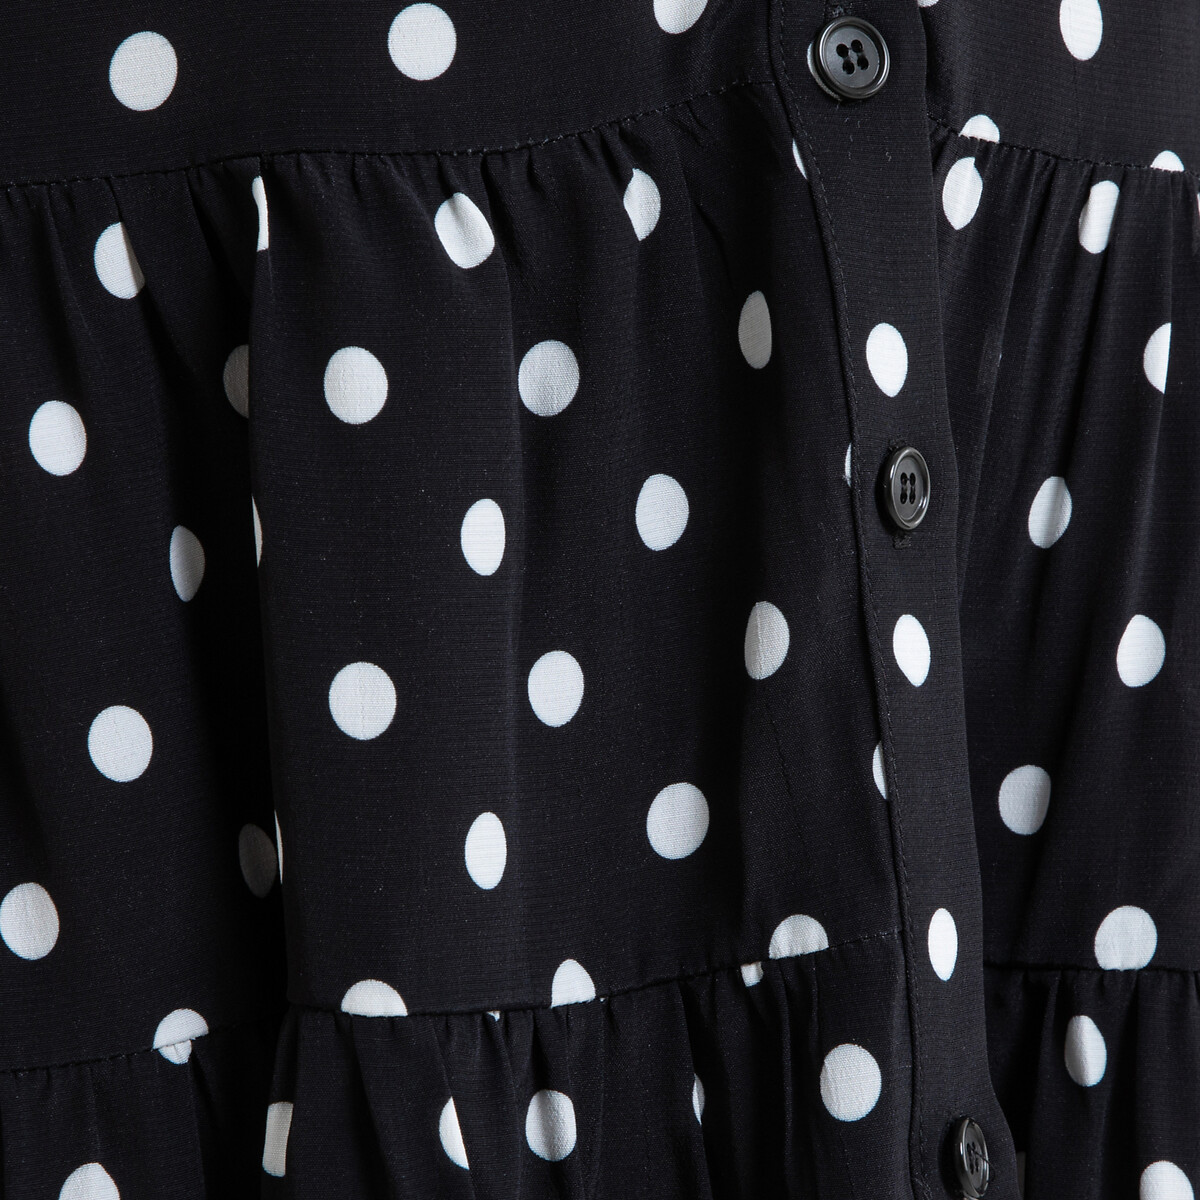 Платье La Redoute Короткое расклешенное в горошек RITA 36 (FR) - 42 (RUS) черный, размер 36 (FR) - 42 (RUS) Короткое расклешенное в горошек RITA 36 (FR) - 42 (RUS) черный - фото 4